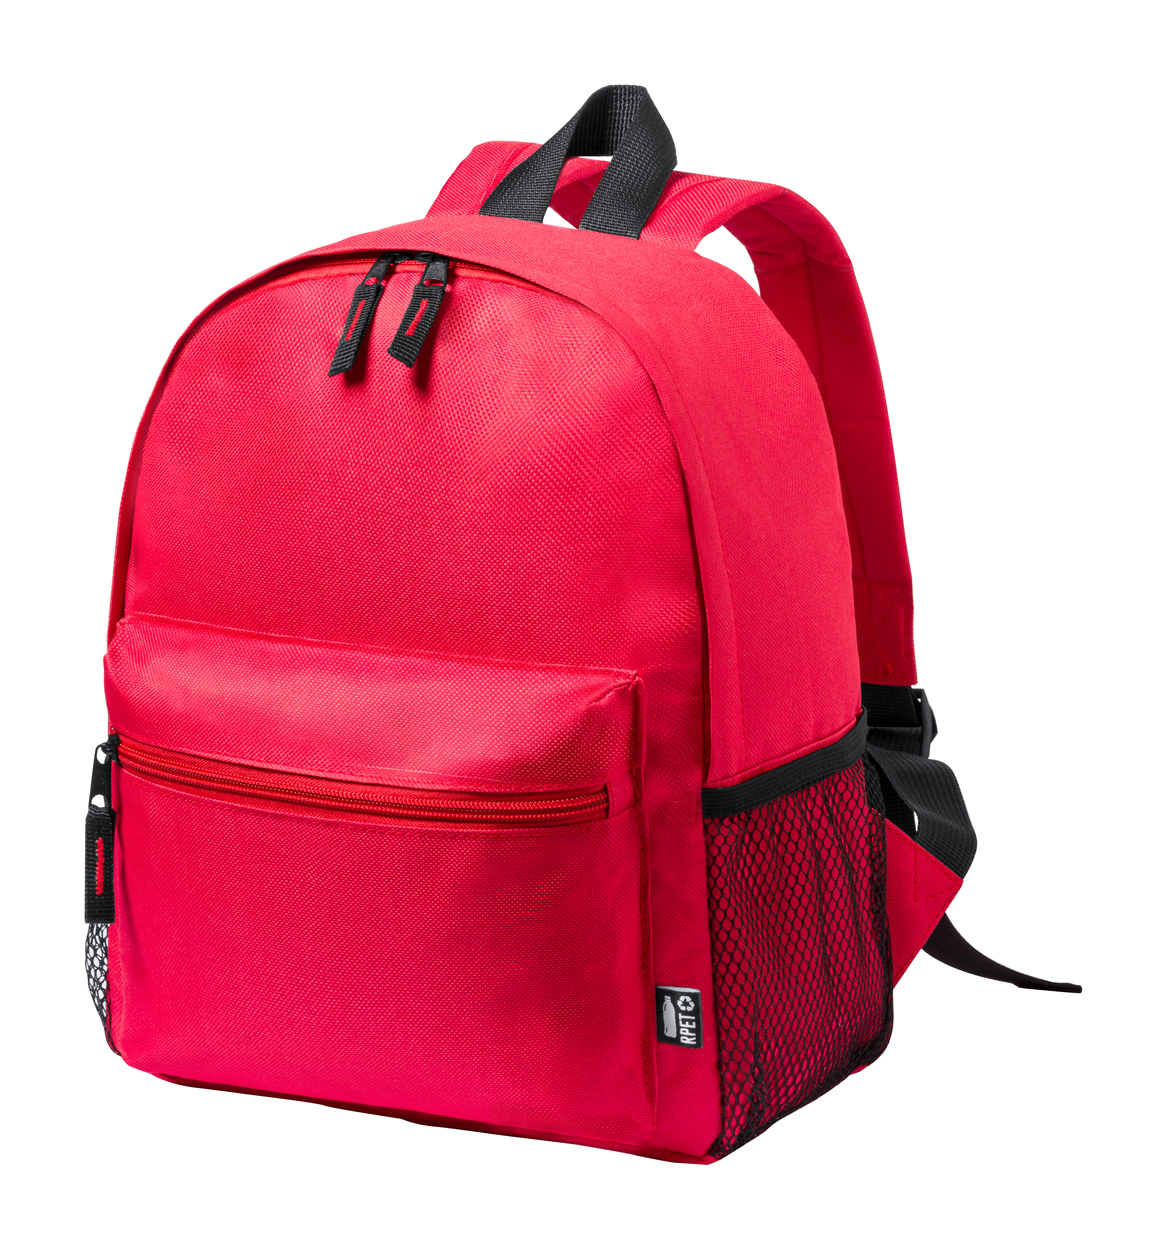 Maggie RPET batoh pro děti - červená